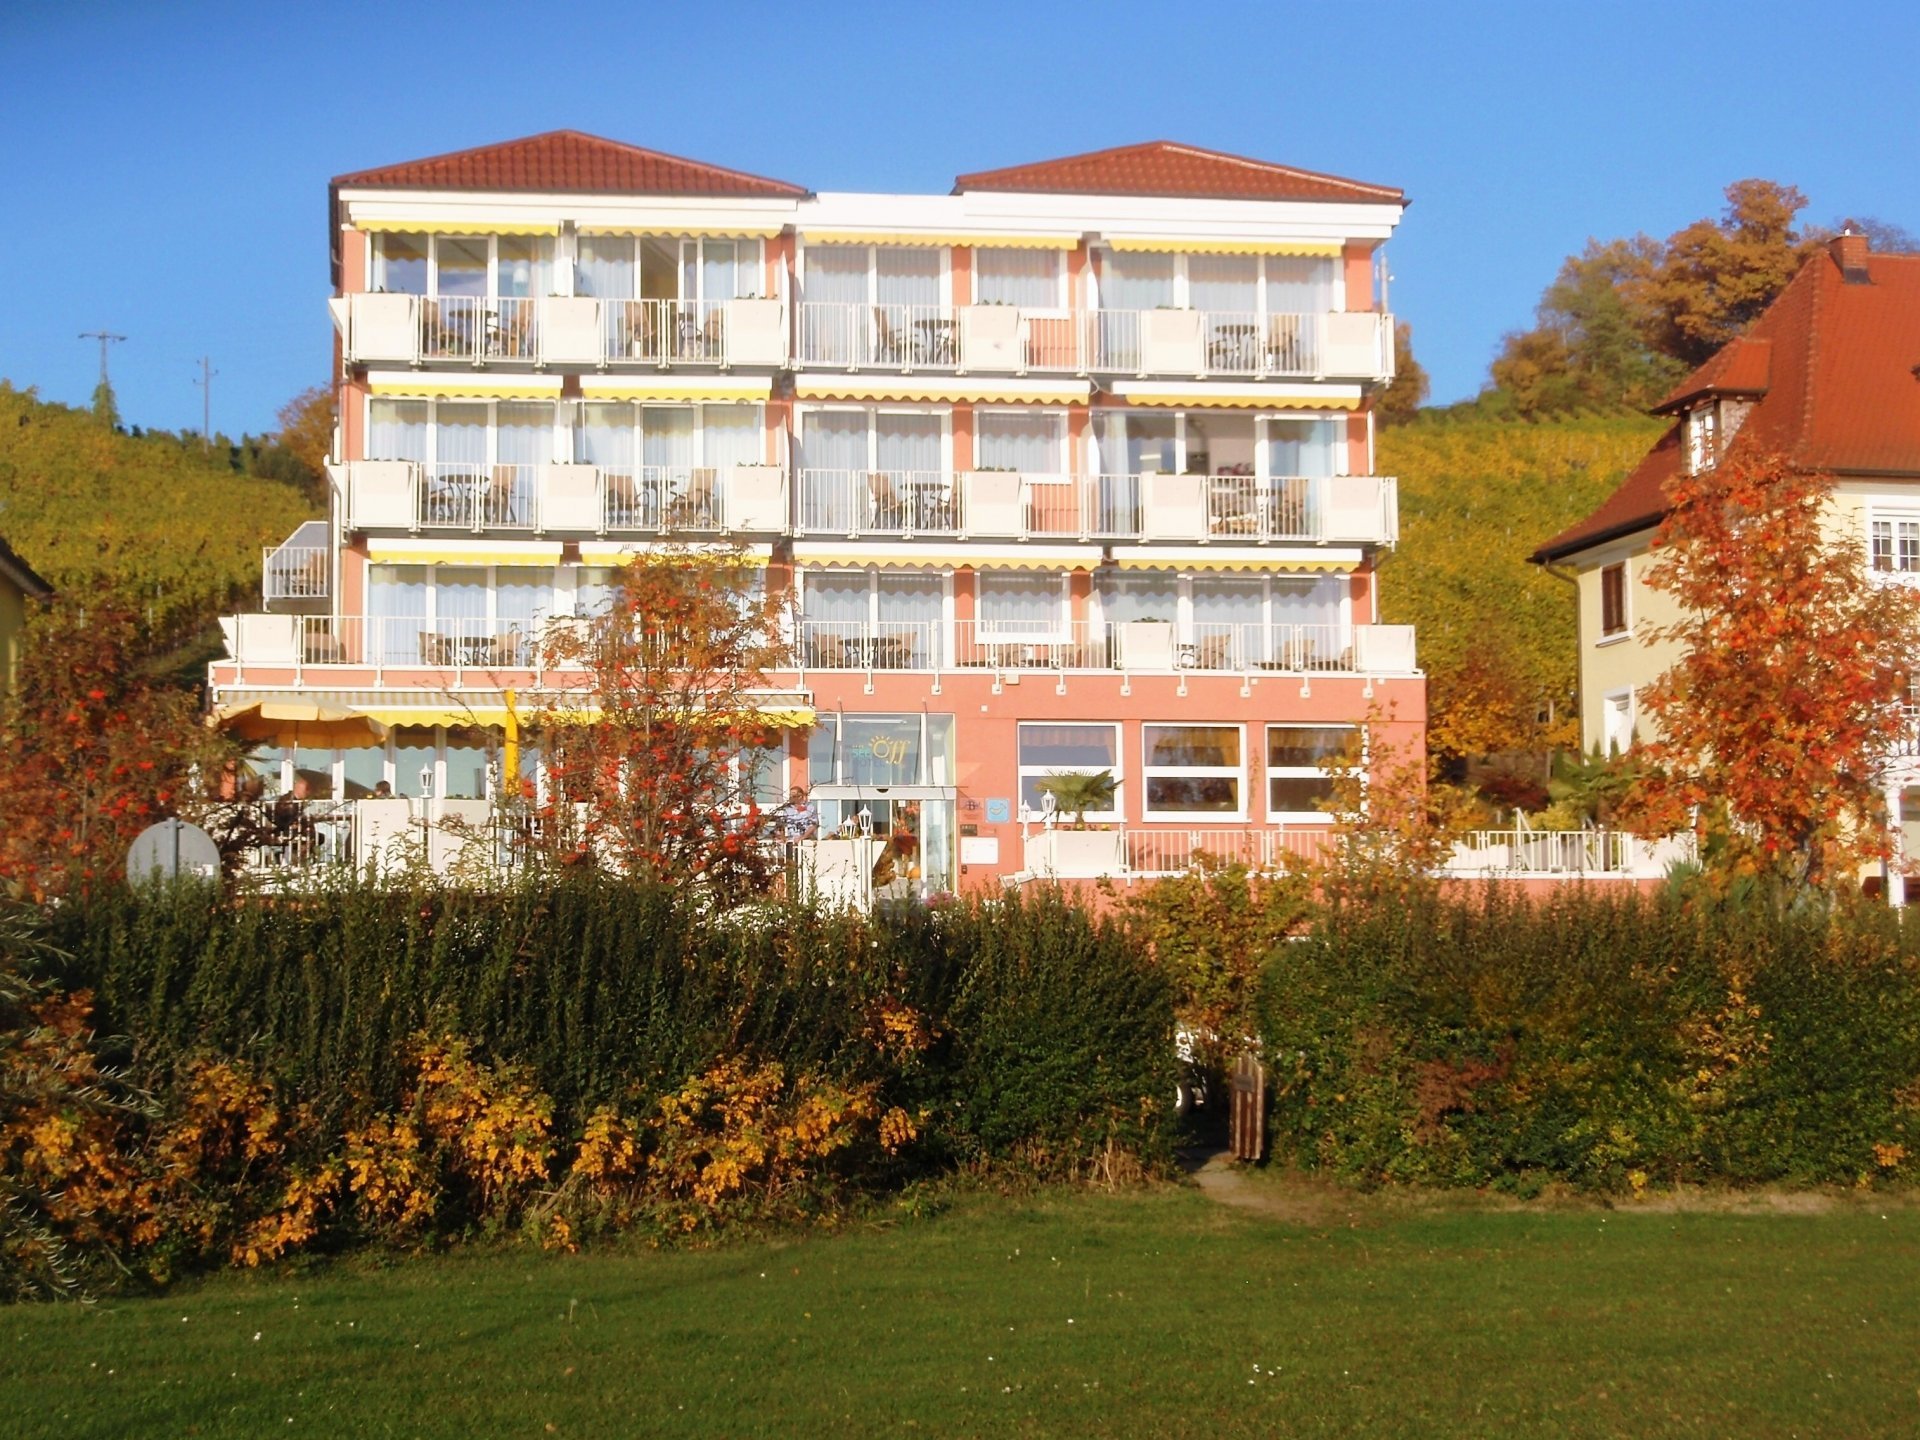 8 Tage Gesundheitsurlaub im Frühjahr 2022 – Basenfasten am Bodensee – See Hotel Off  (4 Sterne) in Meersburg, Baden-Württemberg inkl. All Inclusive